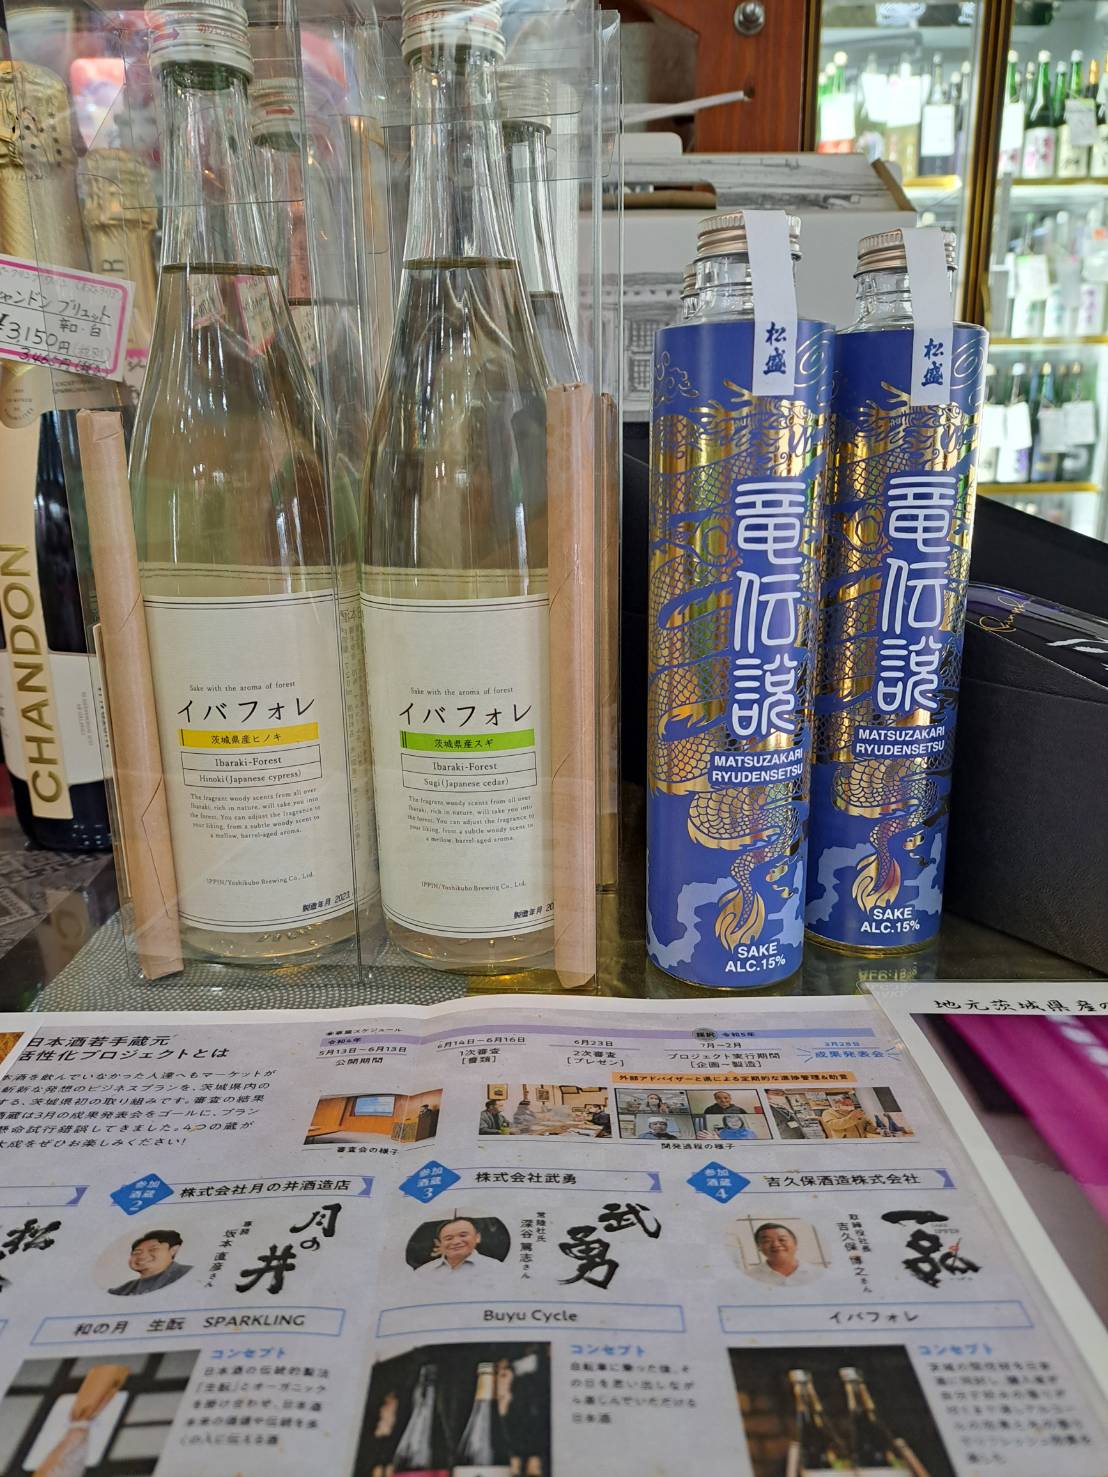 『茨城県日本酒若手蔵元活性化プロジェクトのお酒が入荷しました』